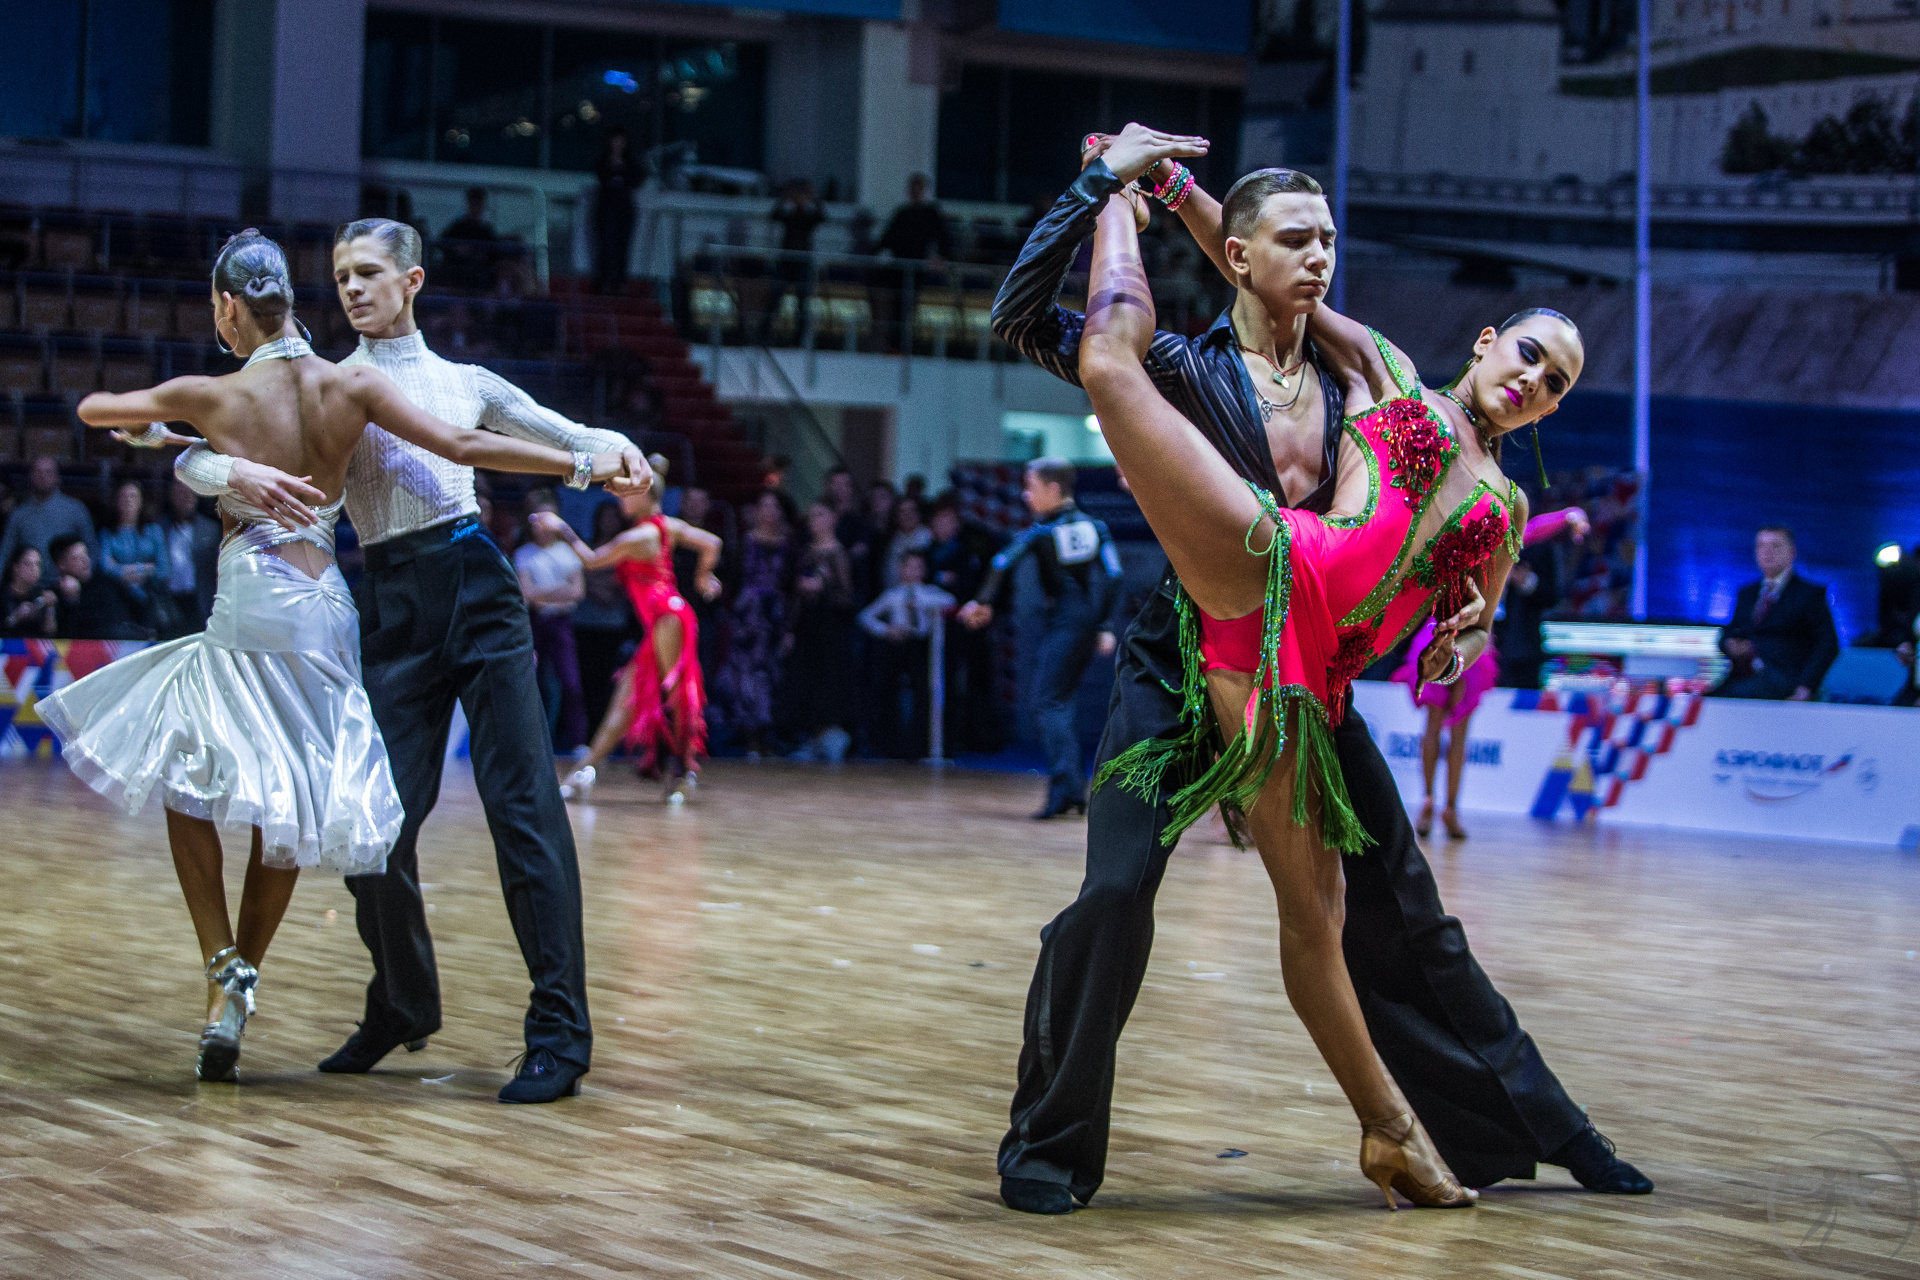 Сайт федерации бальных танцев. Танцевальный спорт. Бальные танцы это спорт. Танцевальный спорт России.